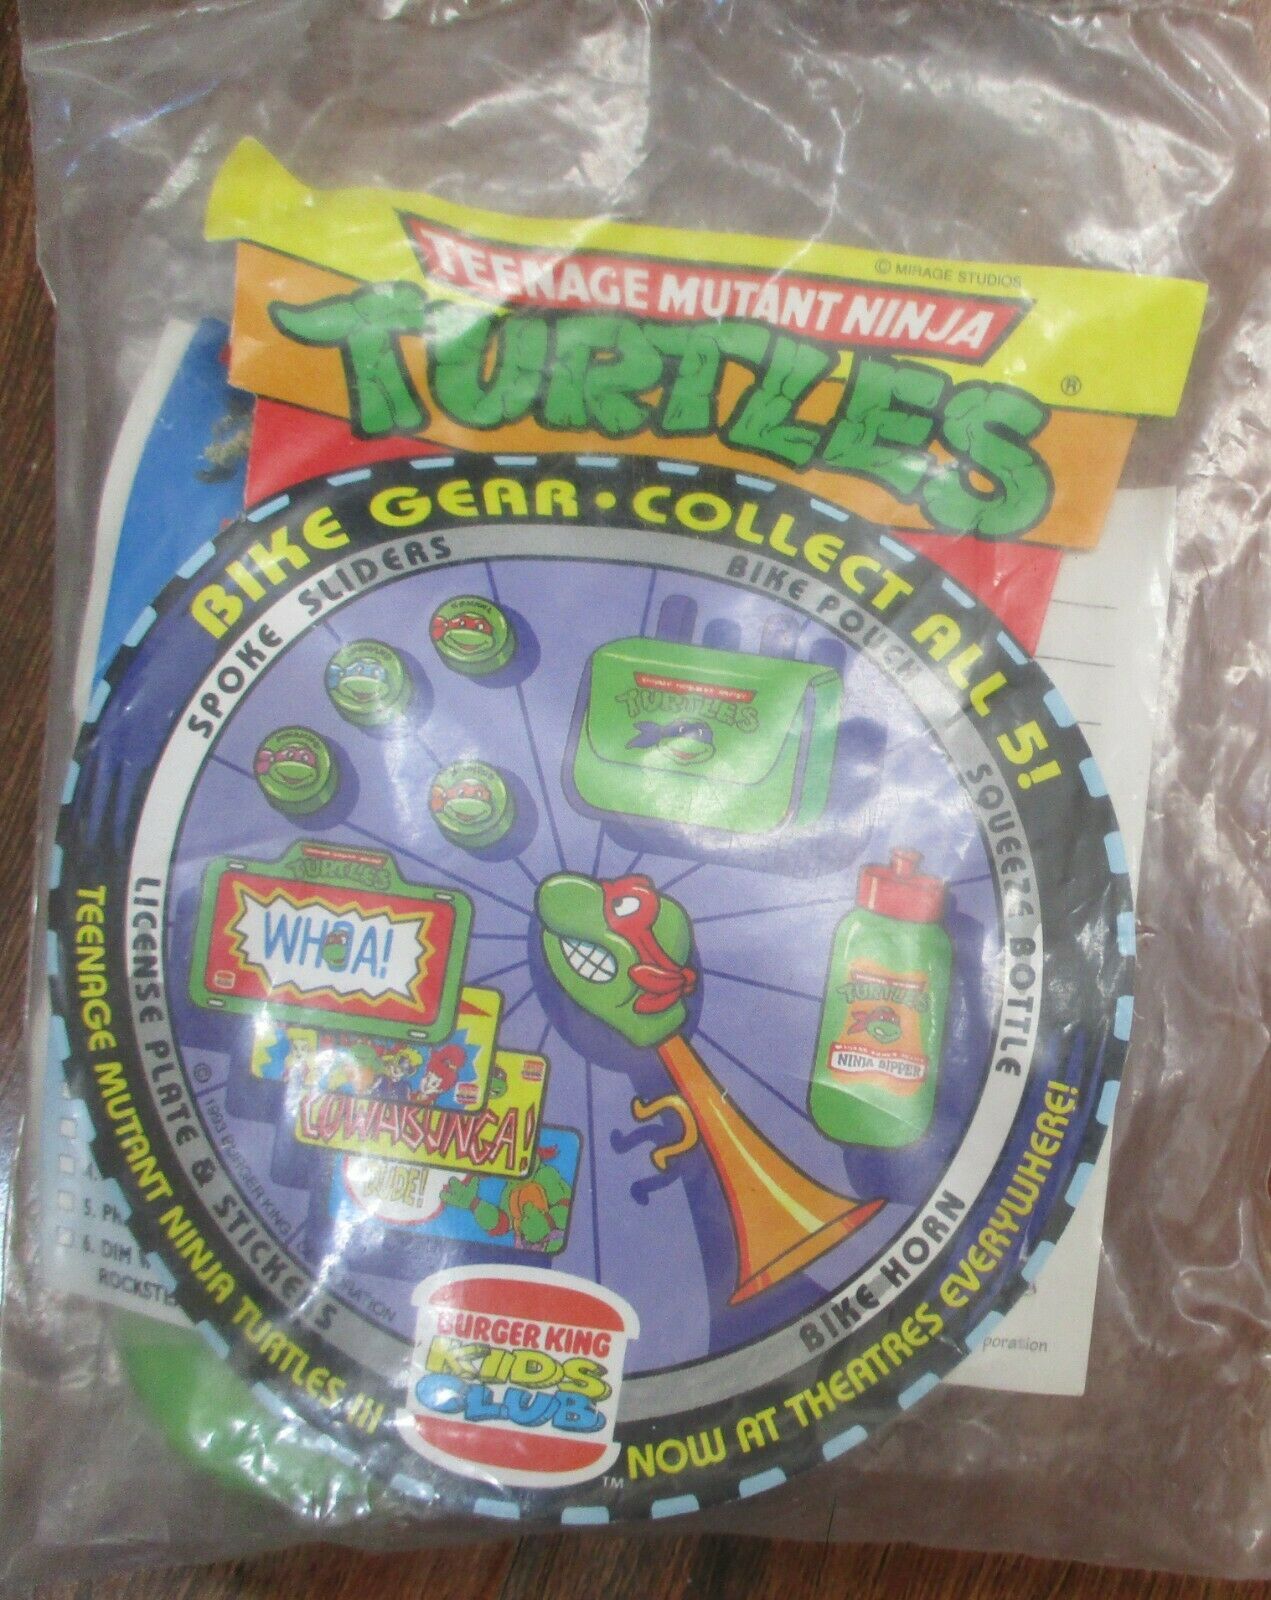 1993 Teenage Mutant Ninja Turtles Burger King Toy Bicycle Spoke Sliders 